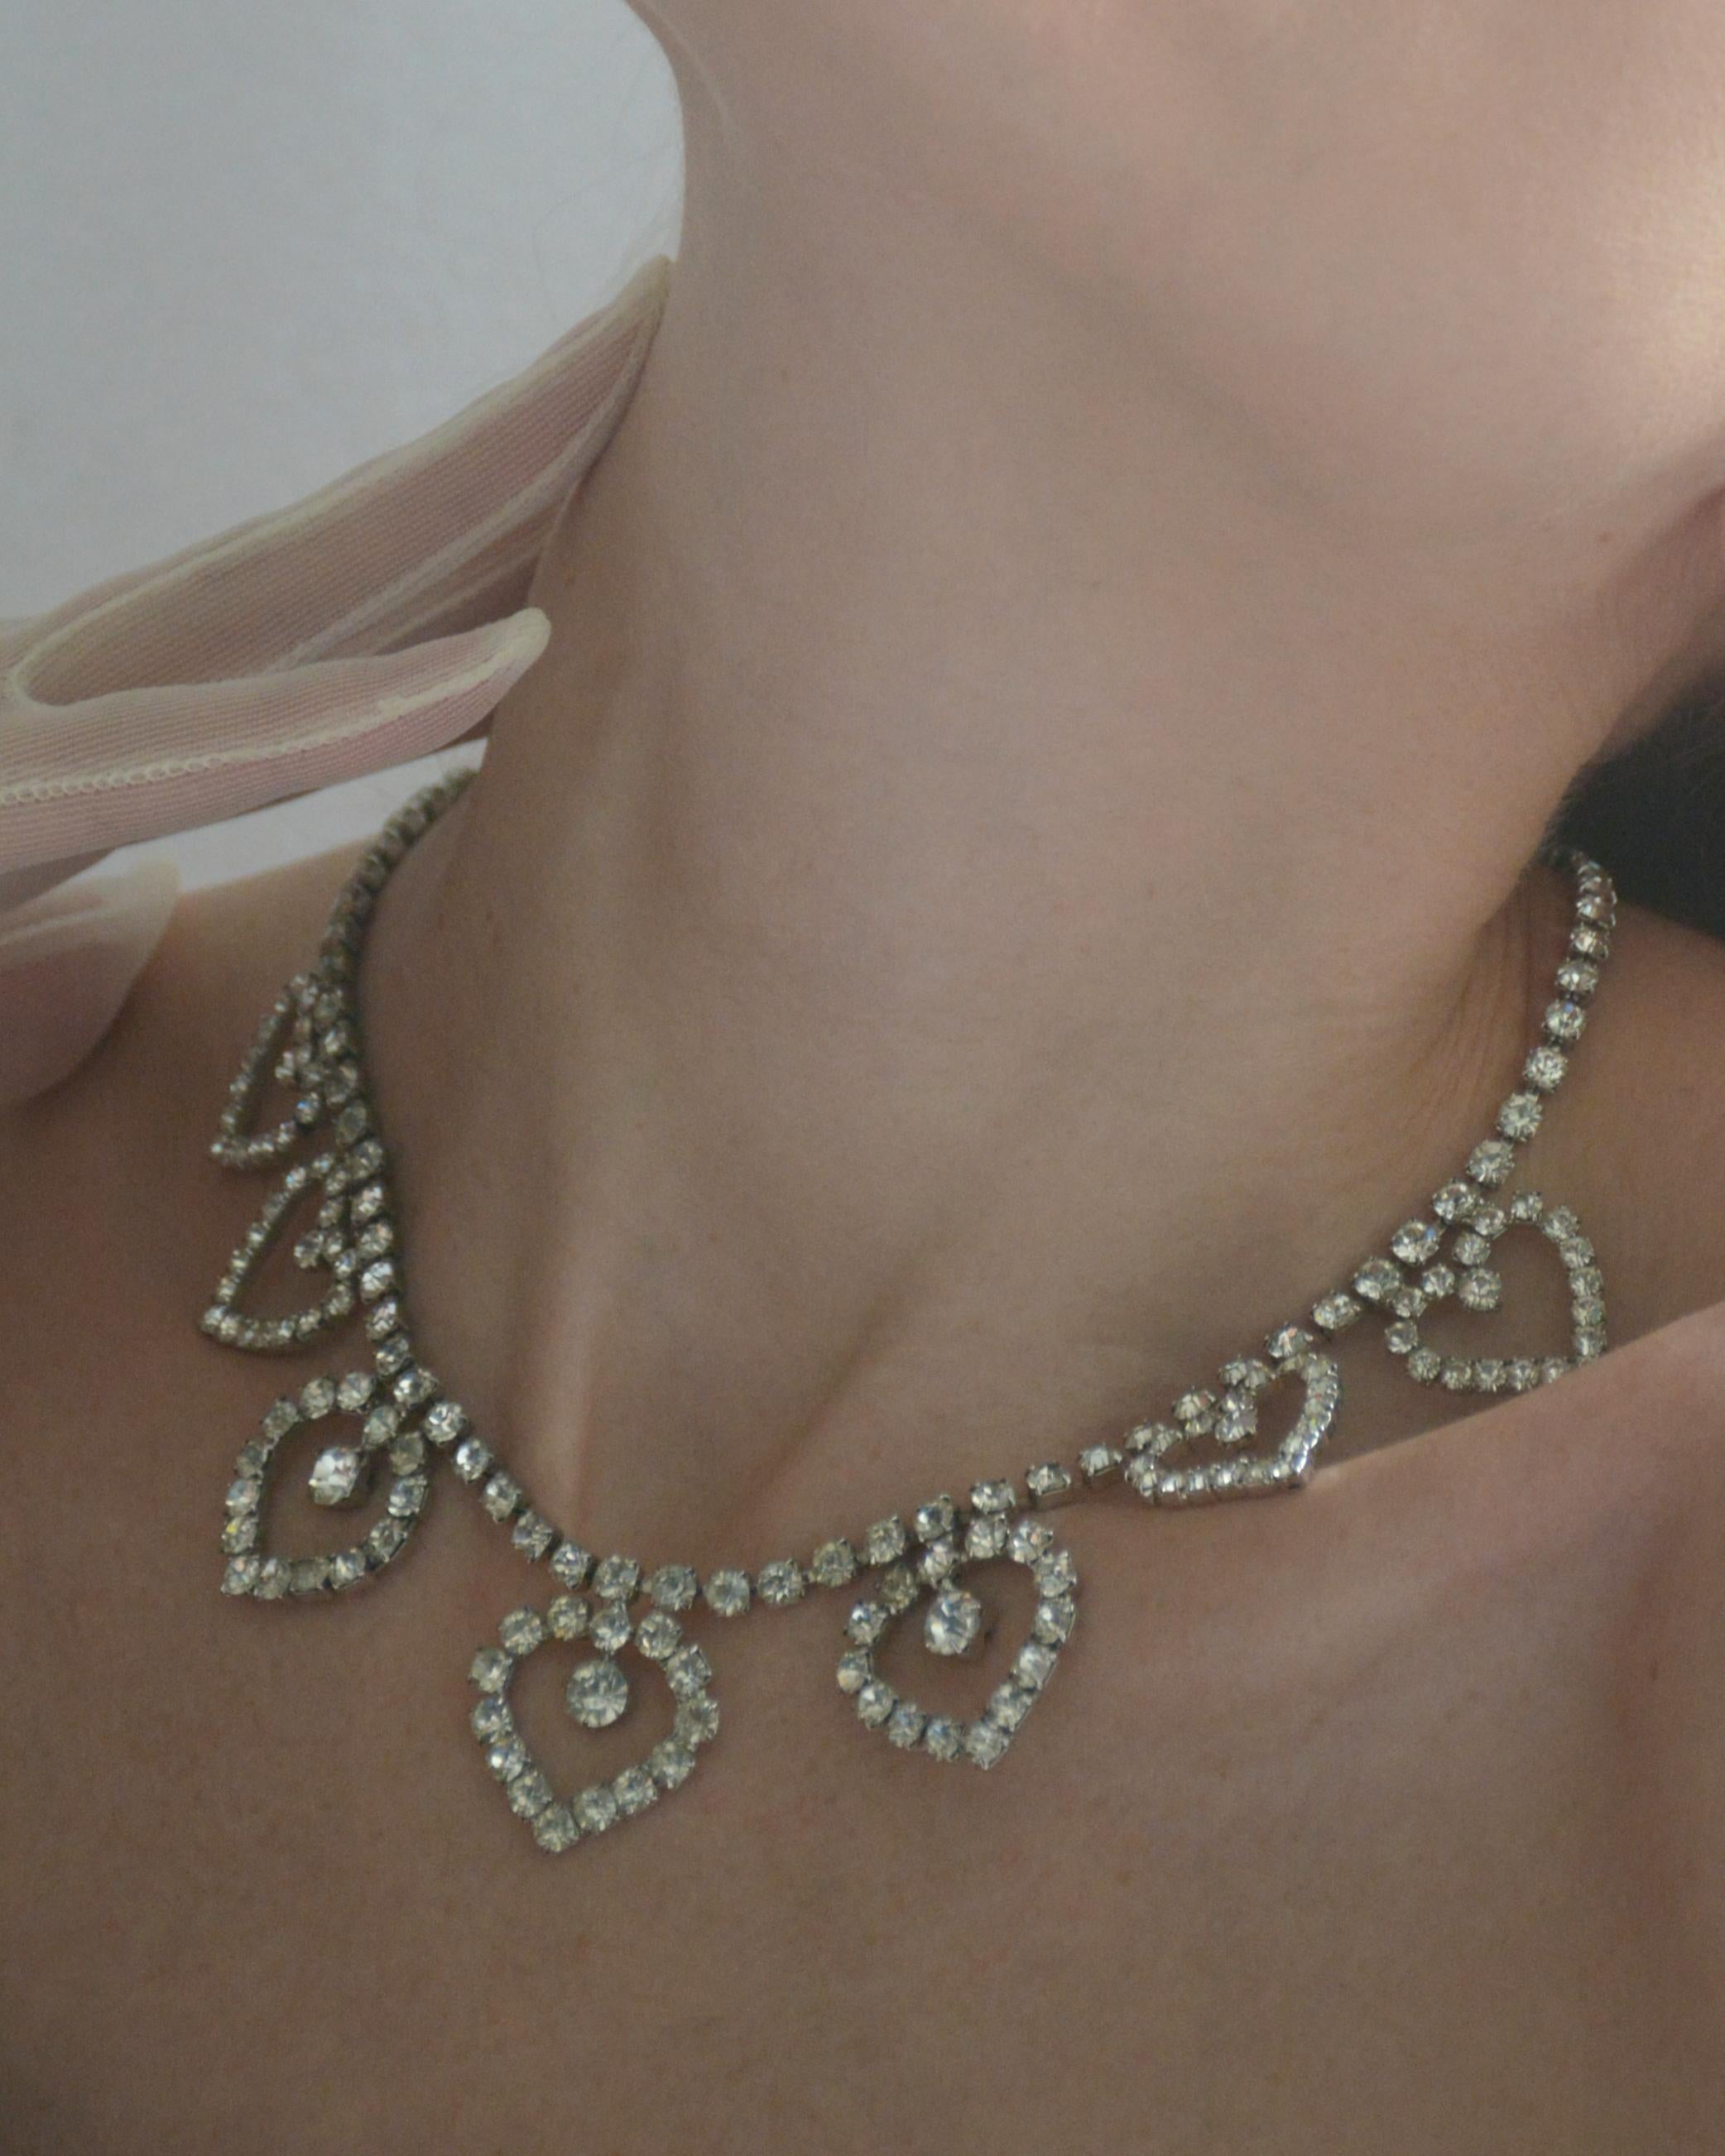 Ce collier diamanté vintage des années 1950 présente des gouttes en forme de cœur, avec trois grands cœurs formant le centre. Ces motifs de cœurs diamantés des années 1950 sont aujourd'hui constamment repris dans des bijoux très convoités par des